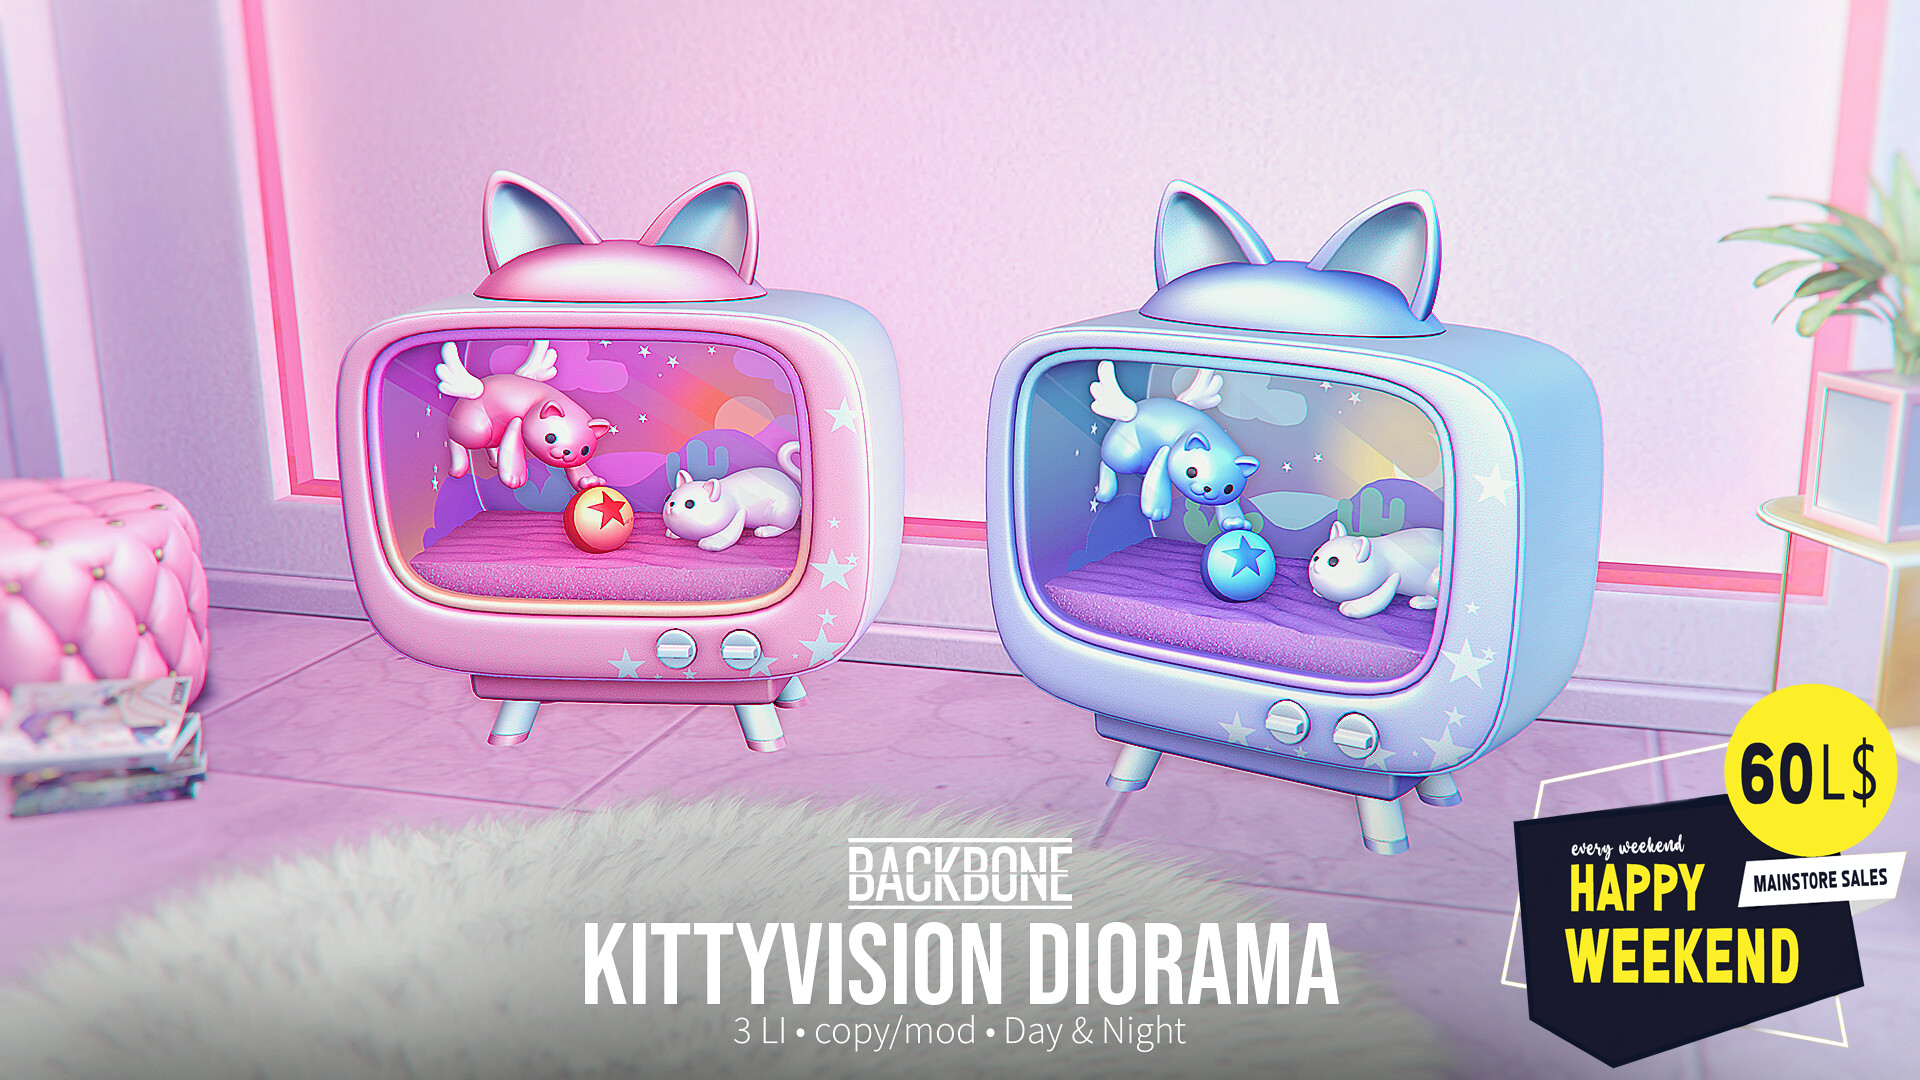 BackBone – Kittyvision Diorama